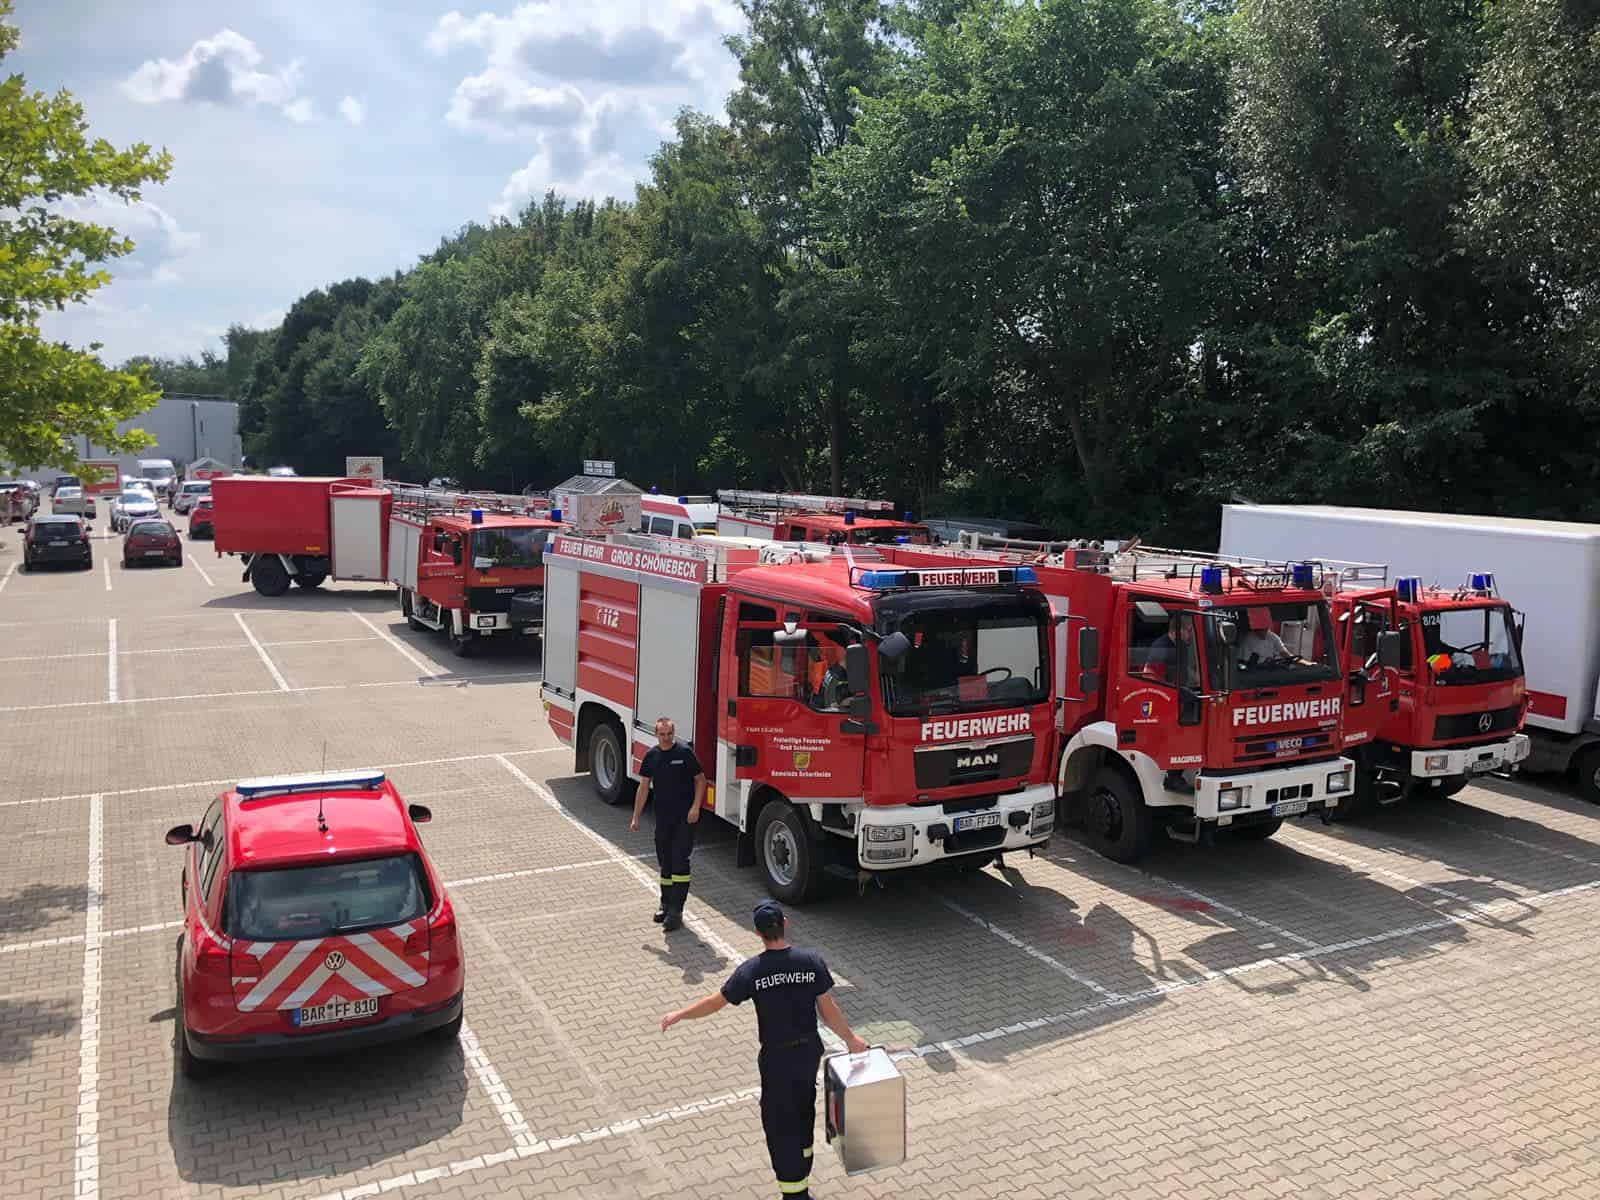 Fichtenwalde: Waldbrand gelöscht - Feuerwehren aus Barnim wohlbehalten zurück